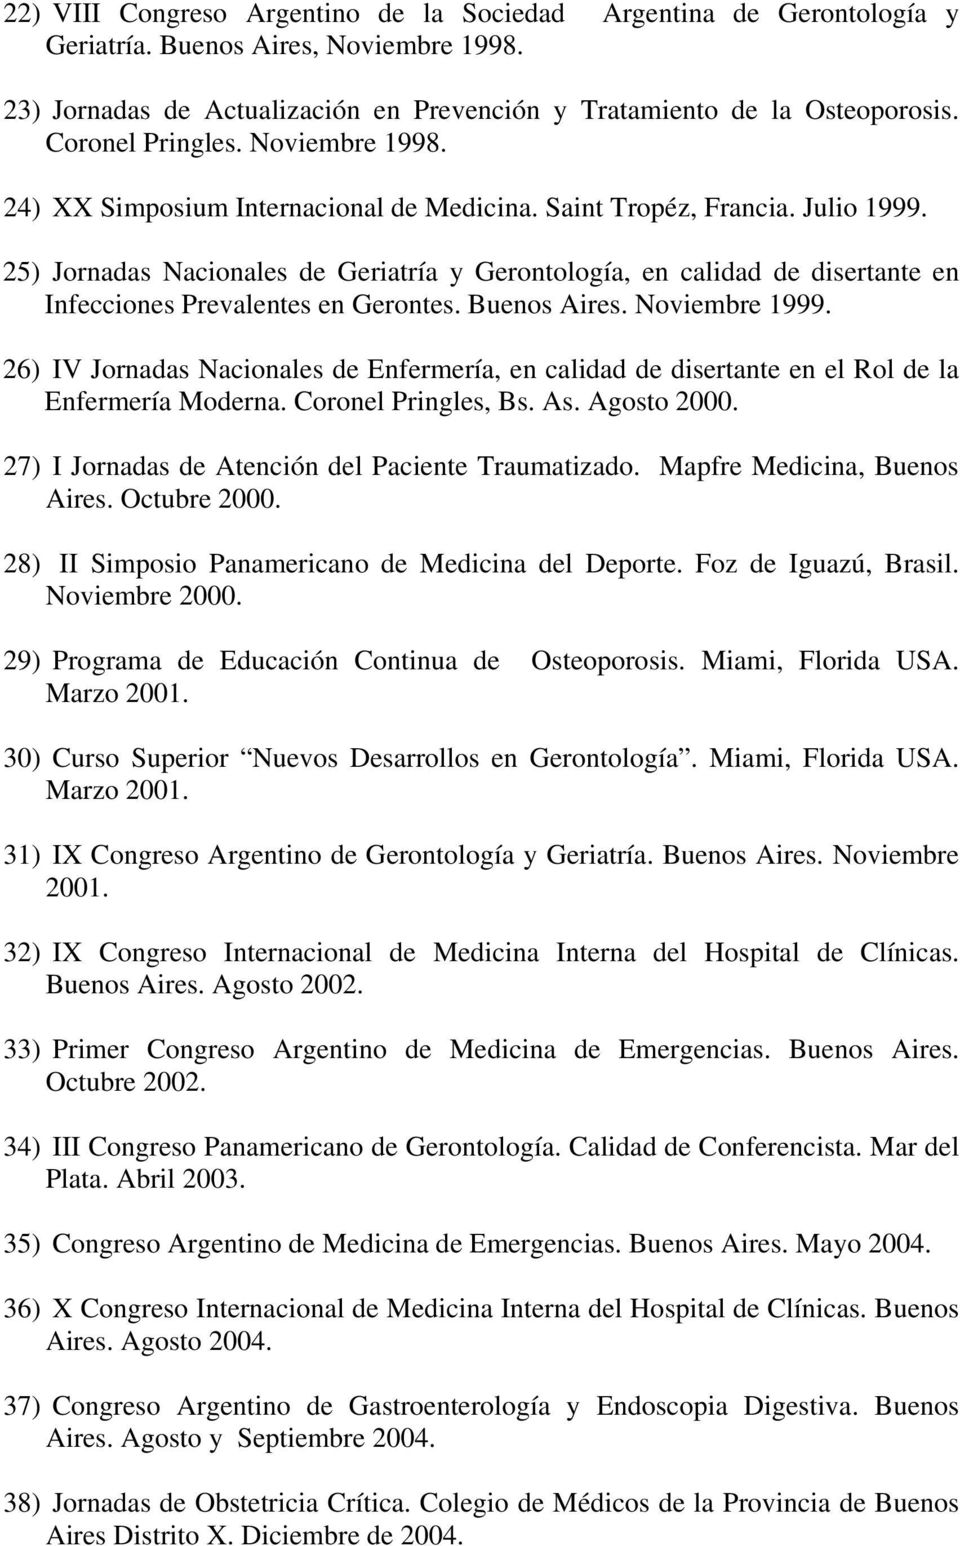 25) Jornadas Nacionales de Geriatría y Gerontología, en calidad de disertante en Infecciones Prevalentes en Gerontes. Buenos Aires. Noviembre 1999.